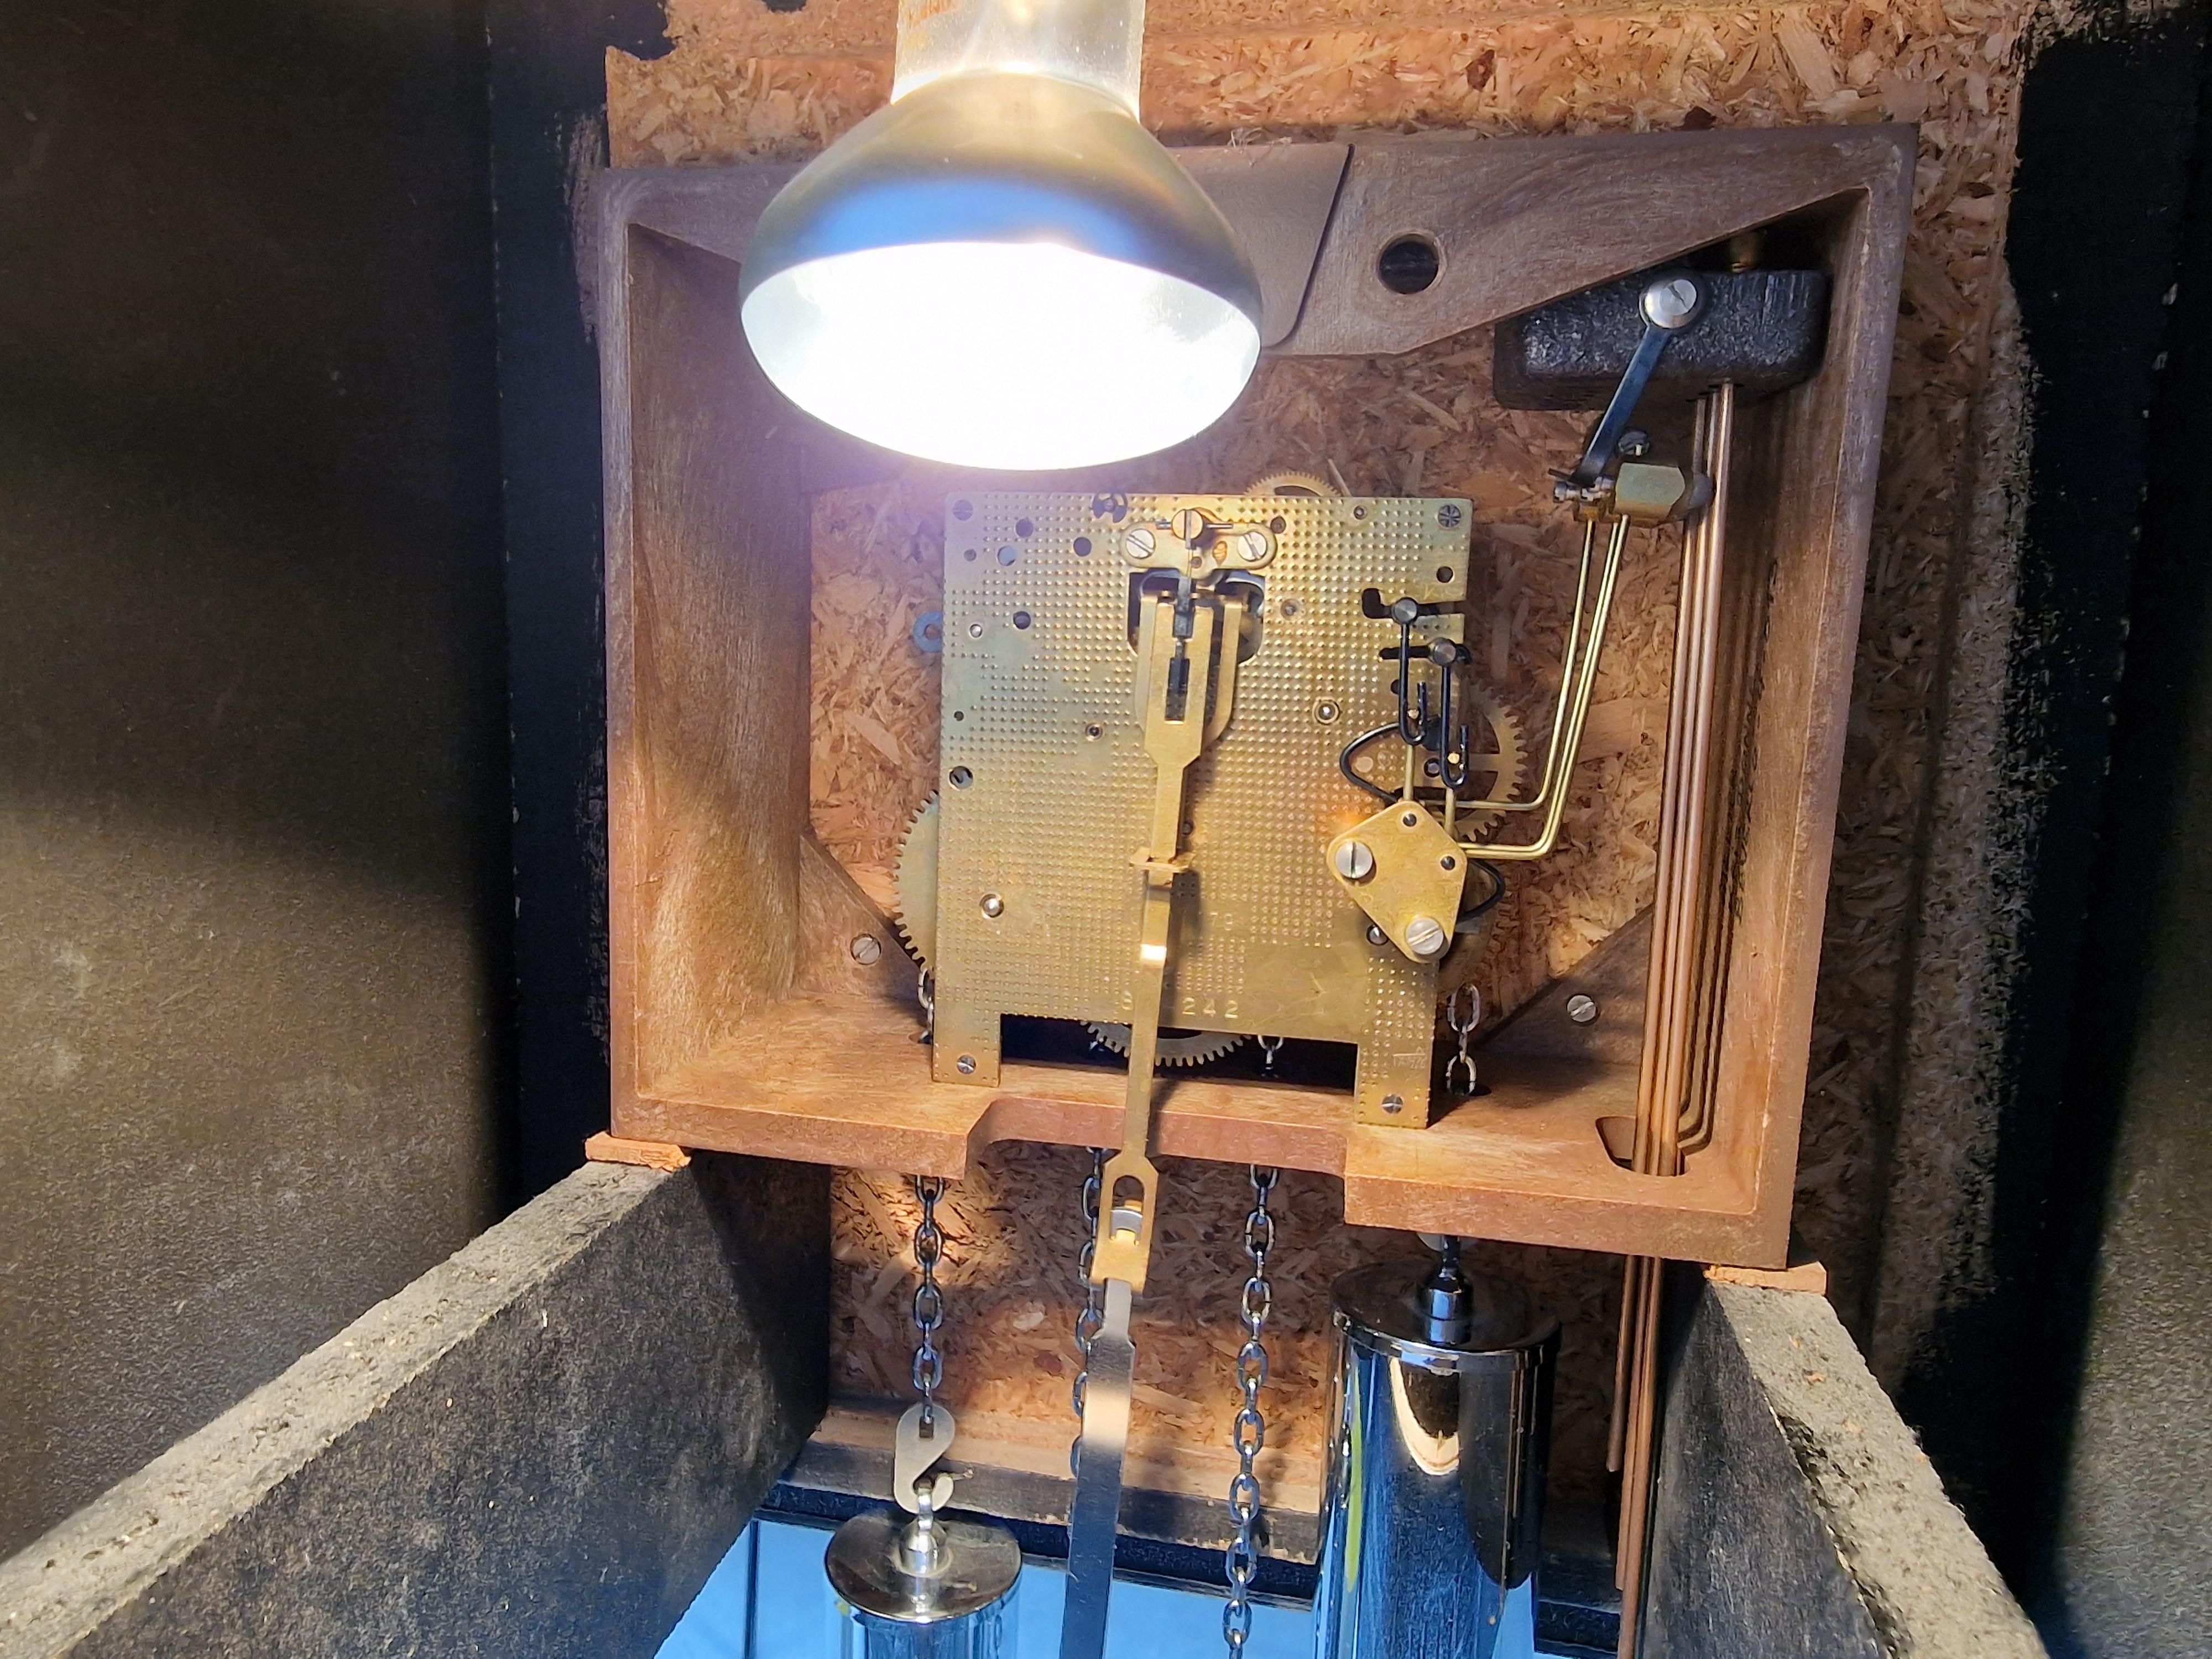 Horloge grand-père vintage sculptée au design brutaliste, fabriquée en résine et en bois.

L'horloge est éclairée de l'intérieur et possède un mécanisme entièrement fonctionnel.

La pièce a été fabriquée en Belgique et a été acquise auprès d'une